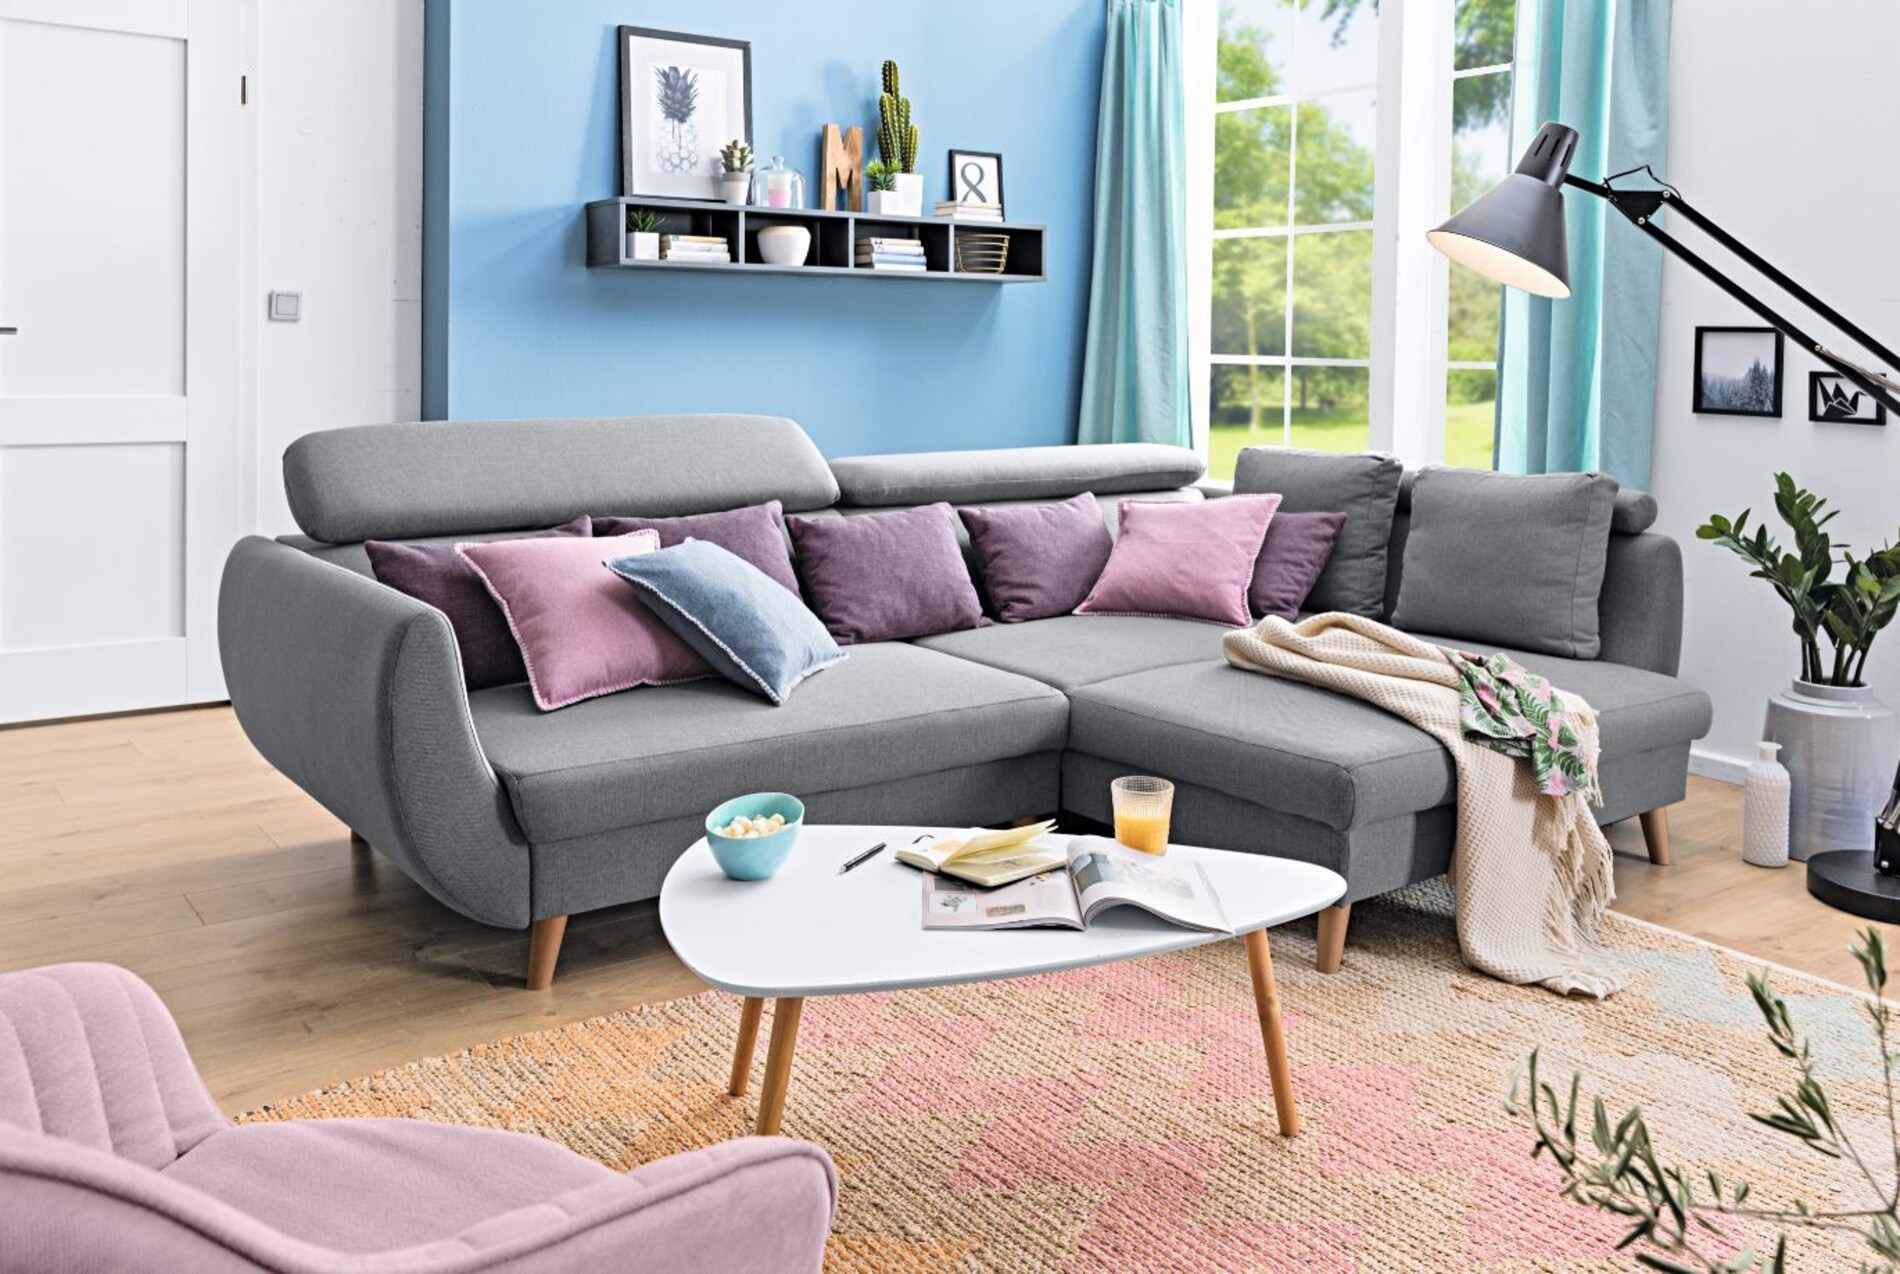 Kleines Wohnzimmer: Gemütlich Und Clever Einrichten intended for Couch Für Kleines Wohnzimmer